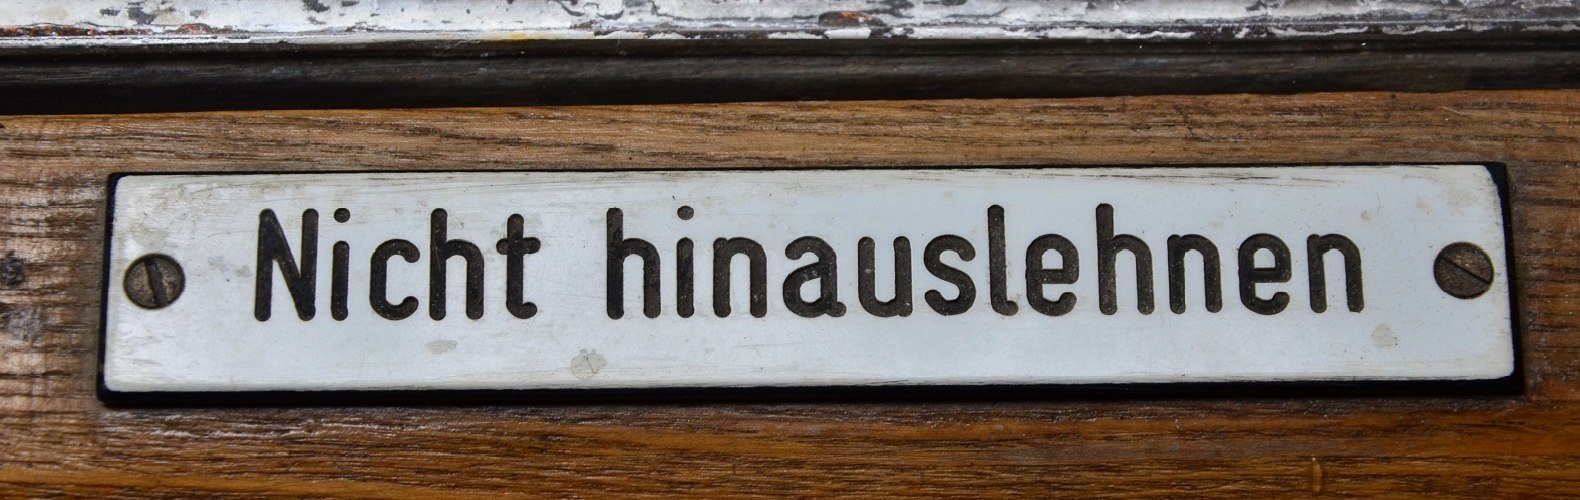 Nicht hinauslehnen - Schild in der Nostalgie-Garnitur der Wendelstein-Zahnradbahn, © Peter Hofmann